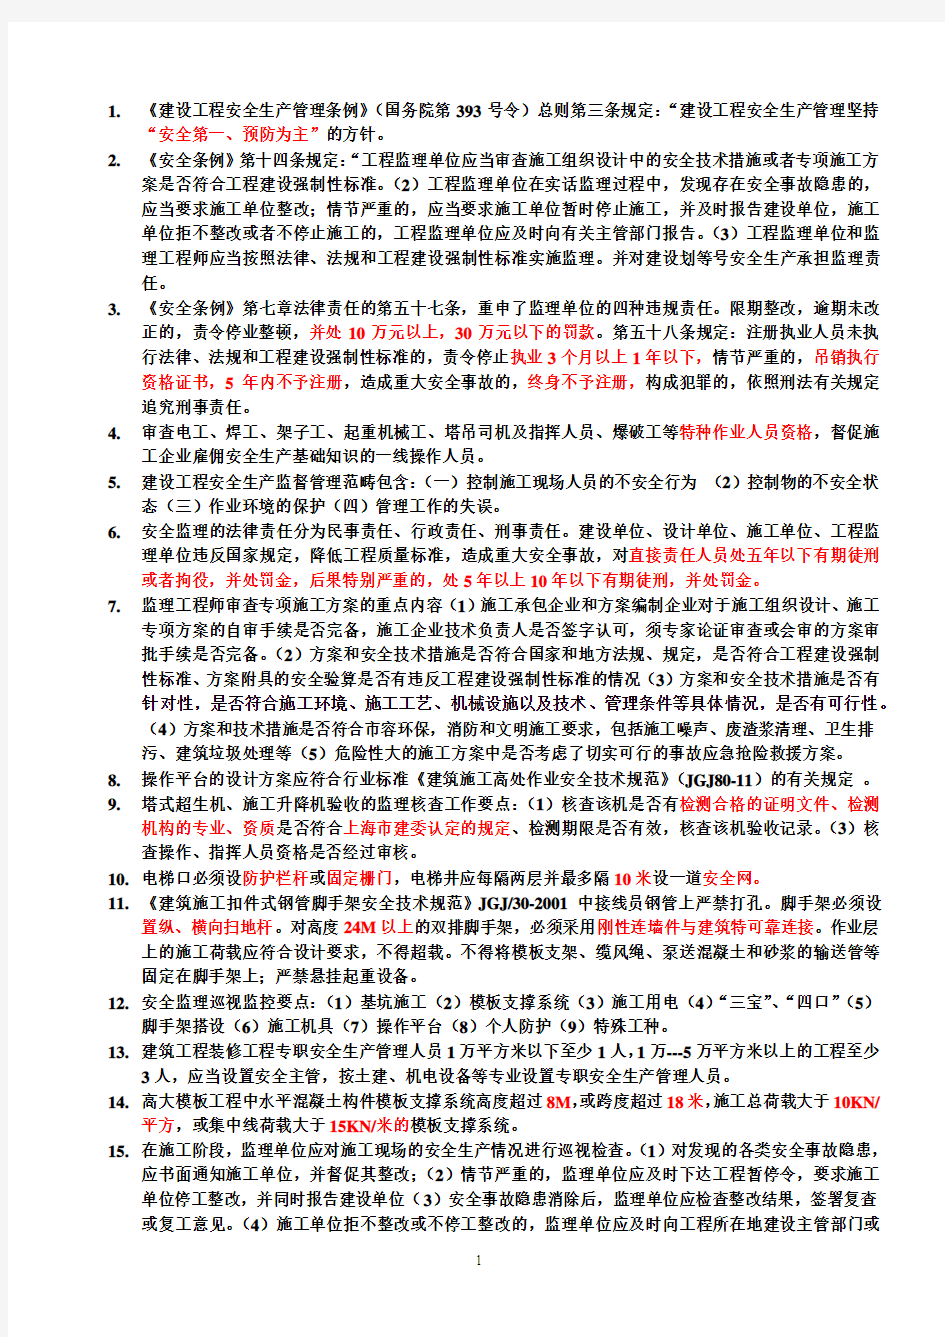 上海市土建js考试资料整理